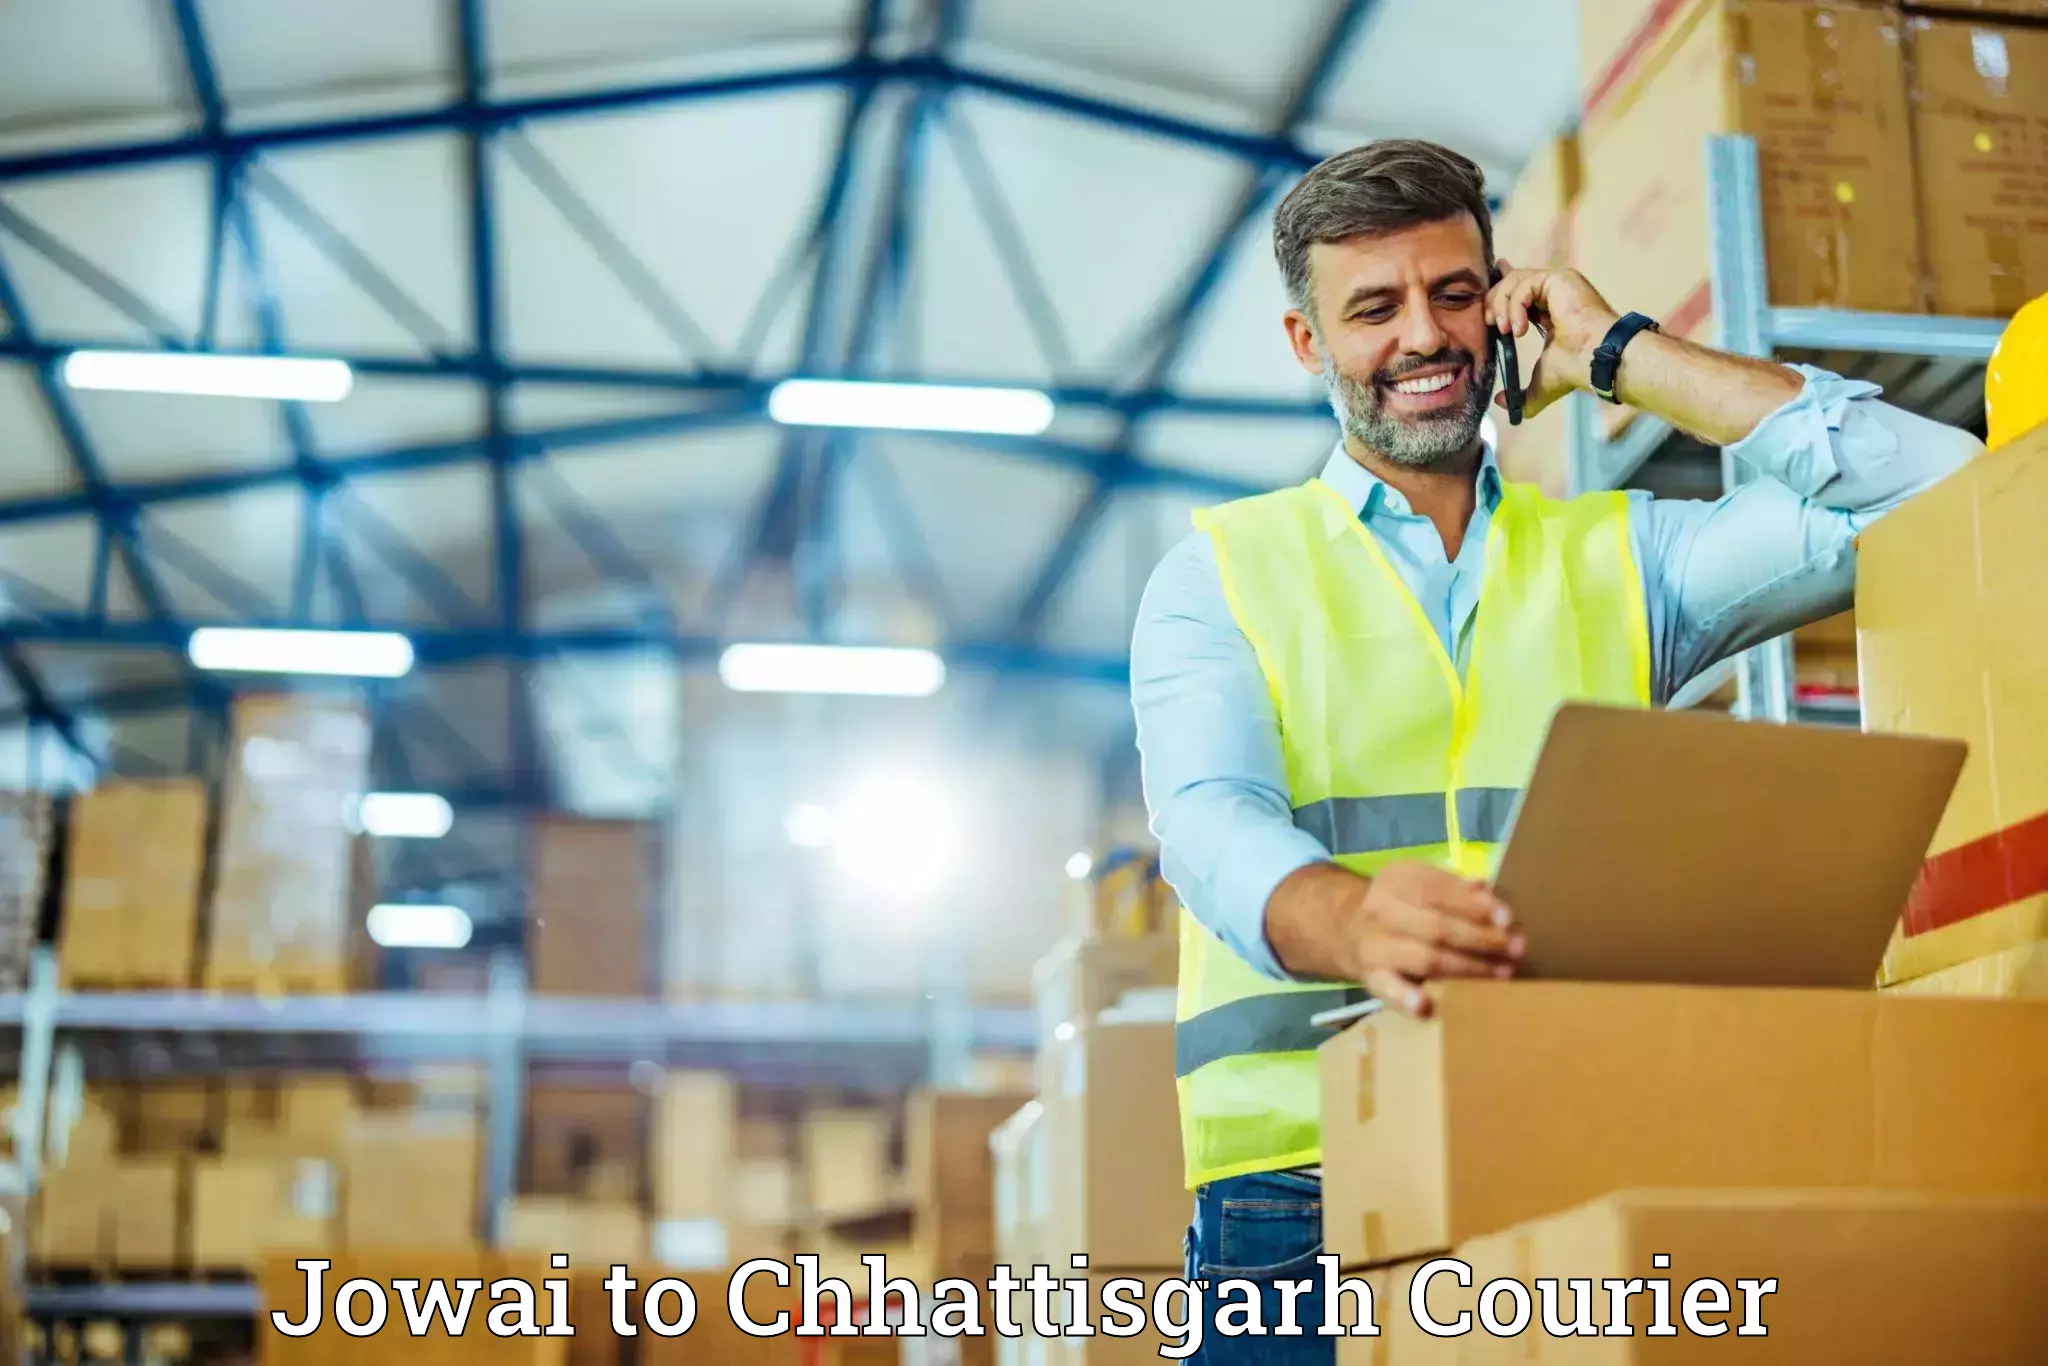 Furniture transport and storage Jowai to Raigarh Chhattisgarh